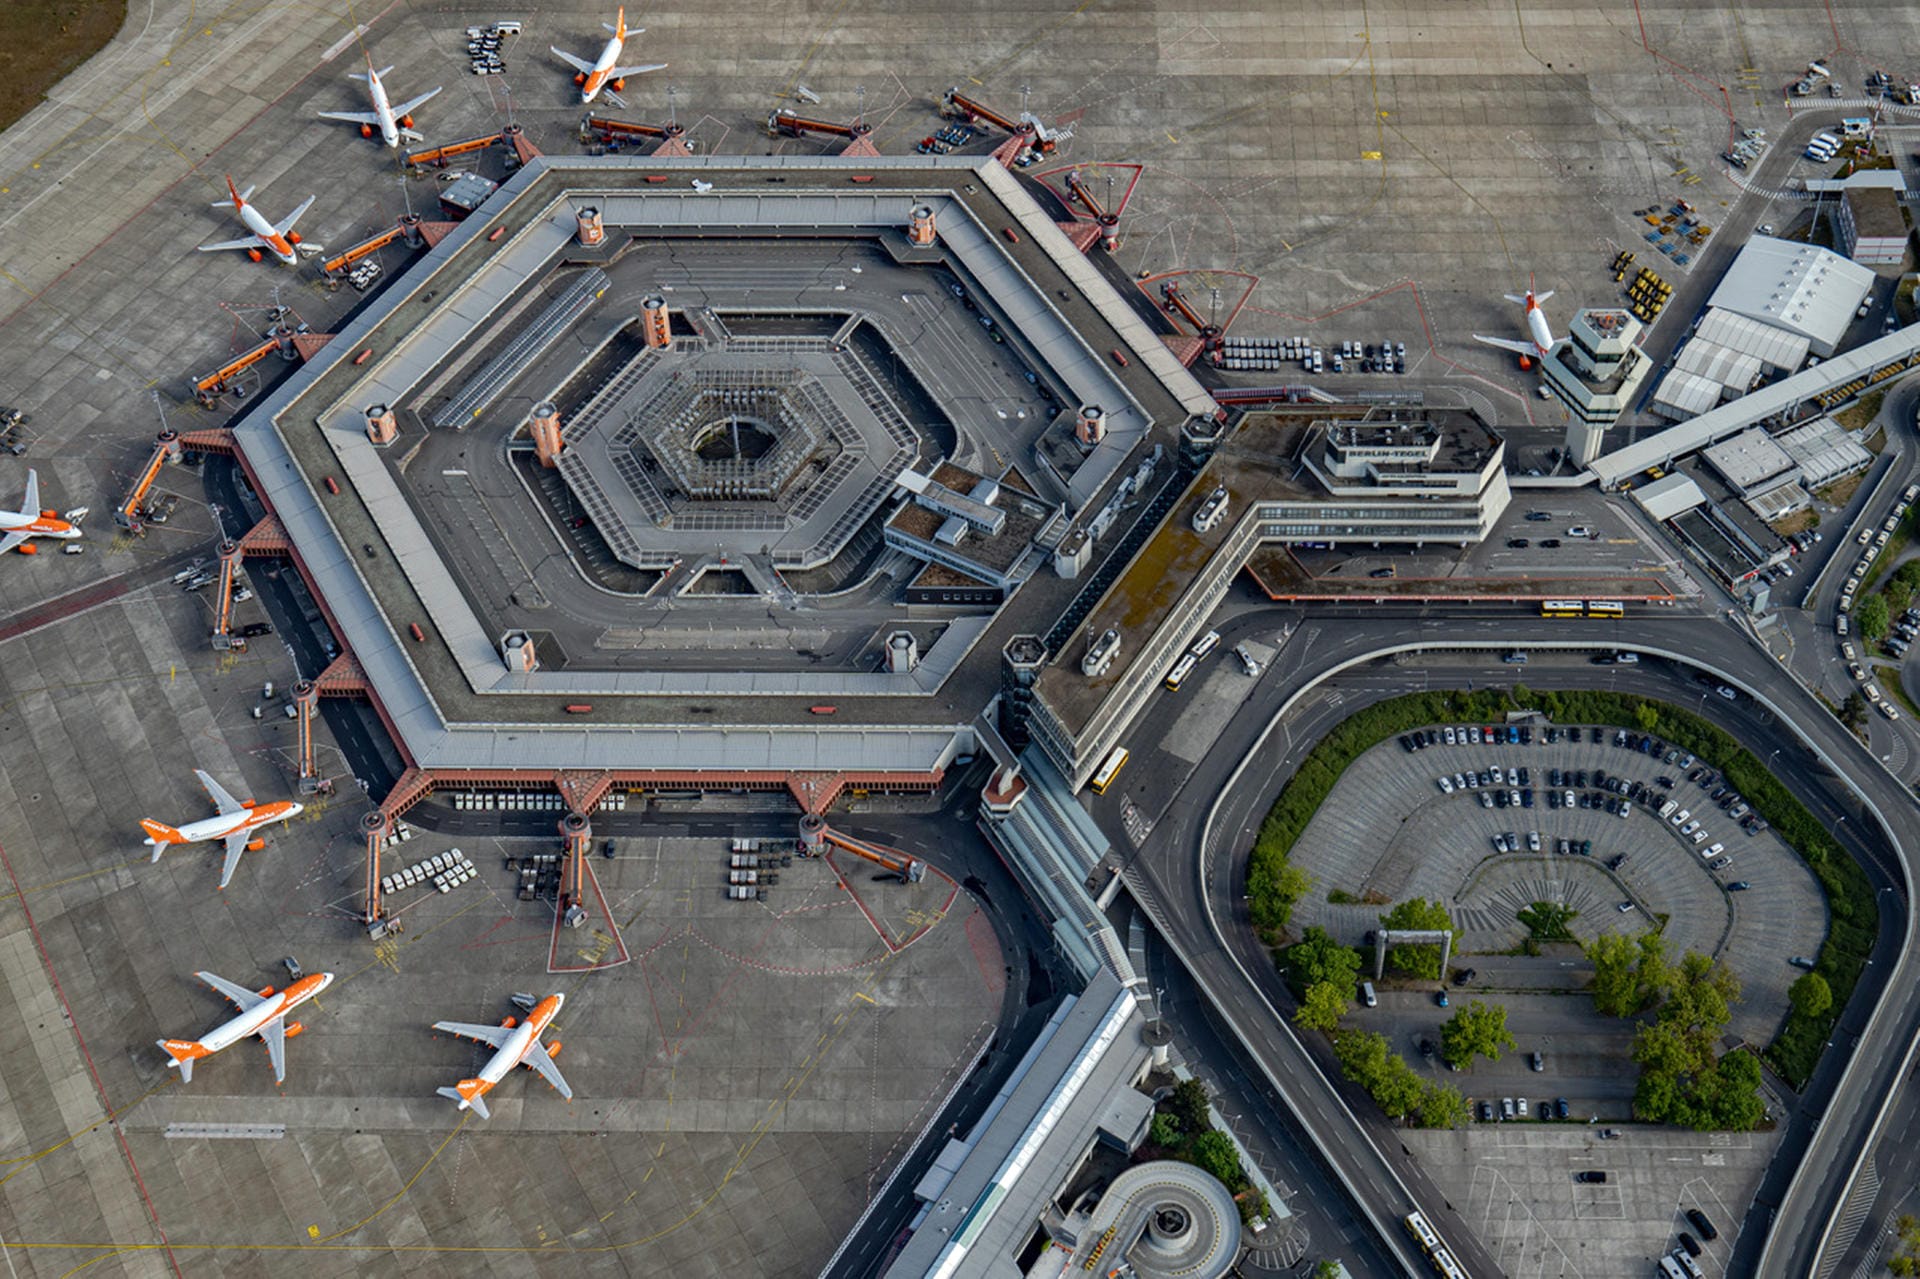 Blick auf den Flughafen Tegel von oben: Der Flughafen ist für seine sechseckige Form weltberühmt geworden.